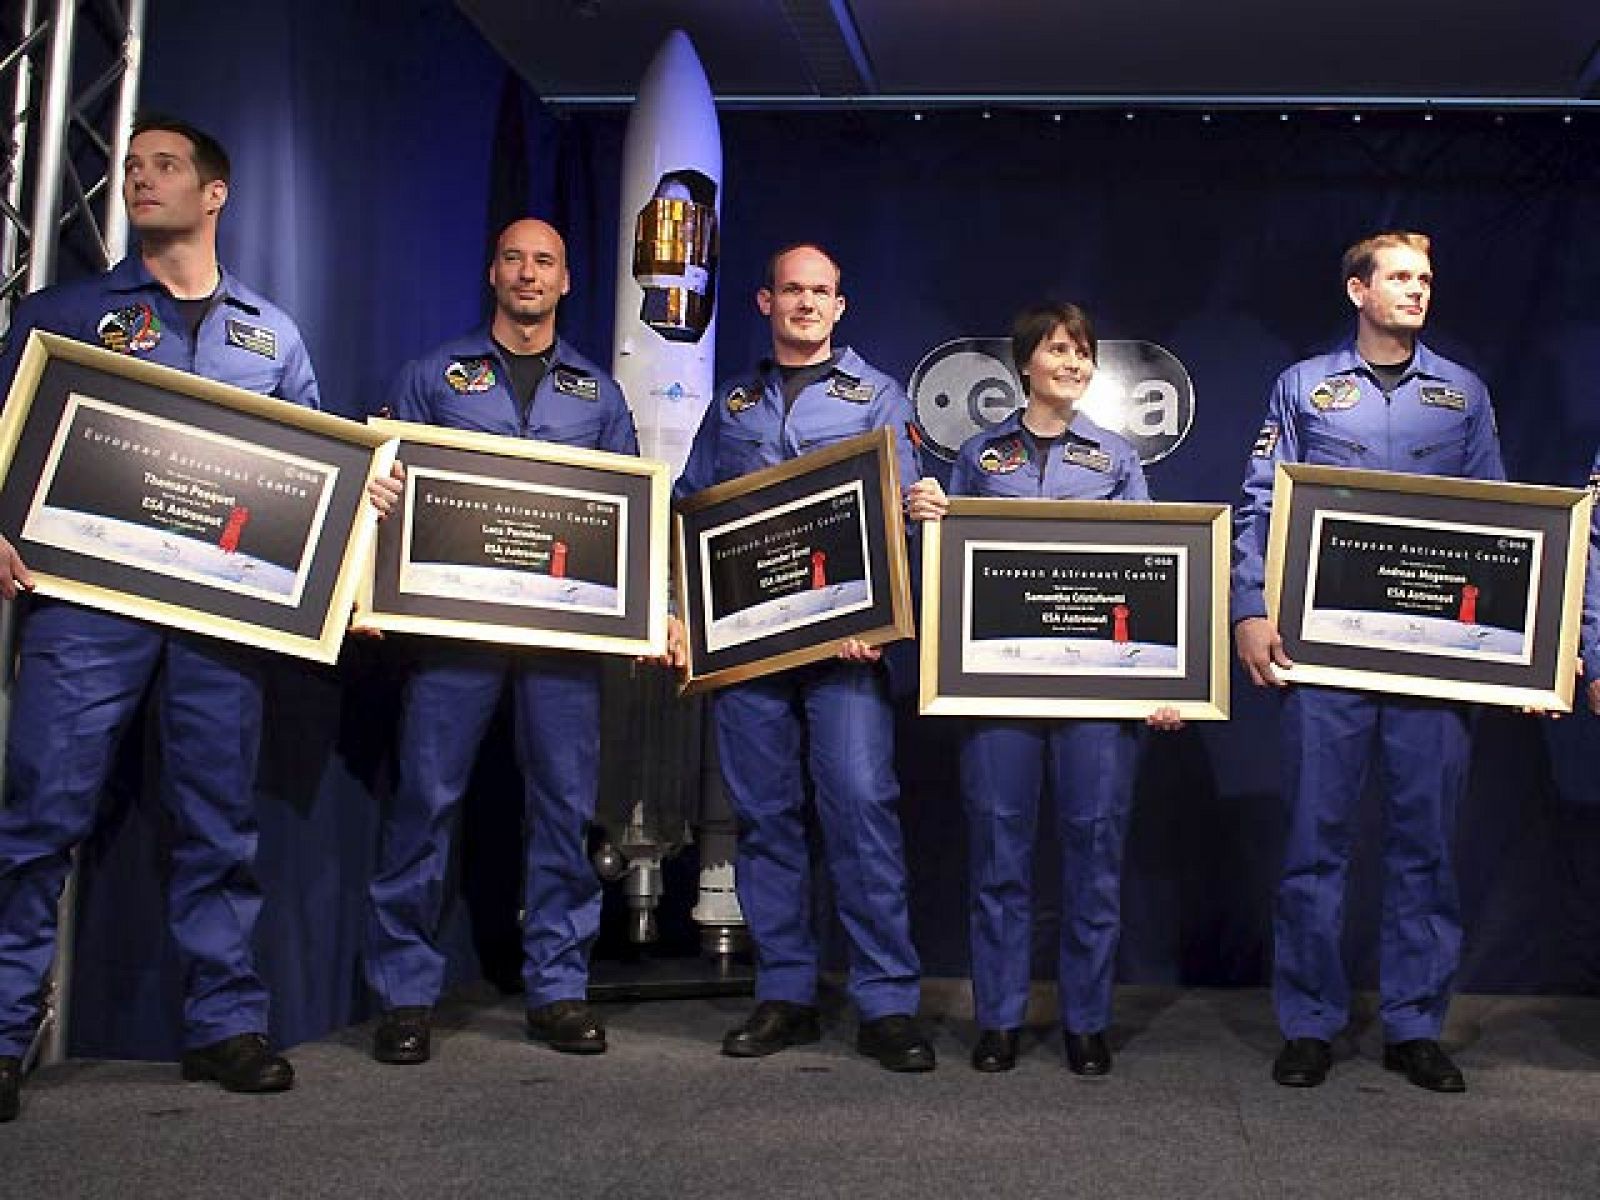 El entrenamiento de los seis nuevos astronautas europeos